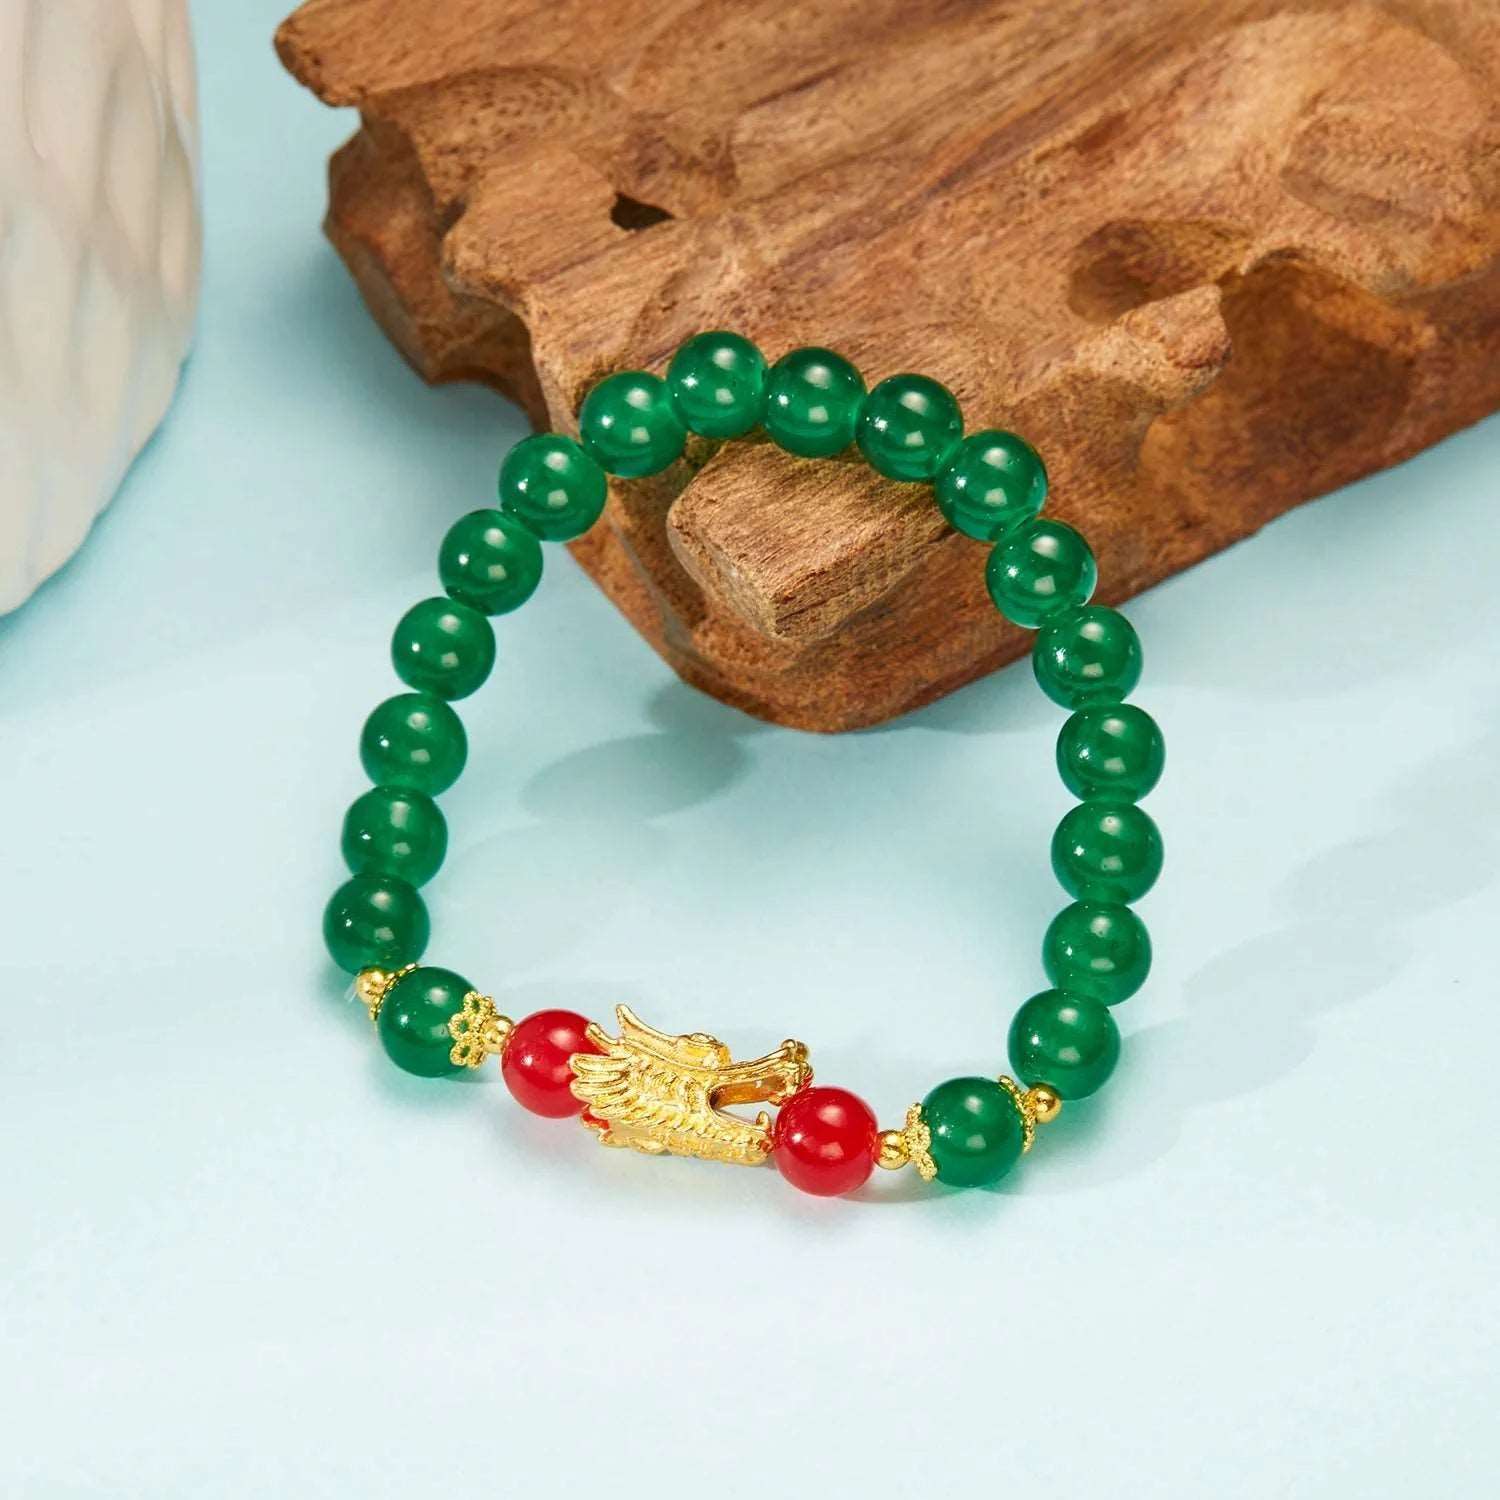 Chinese Zodiac Dragon Beaded Bracelet - Bracelets from Dear Cece - Just £4.99! Shop now at Dear Cece